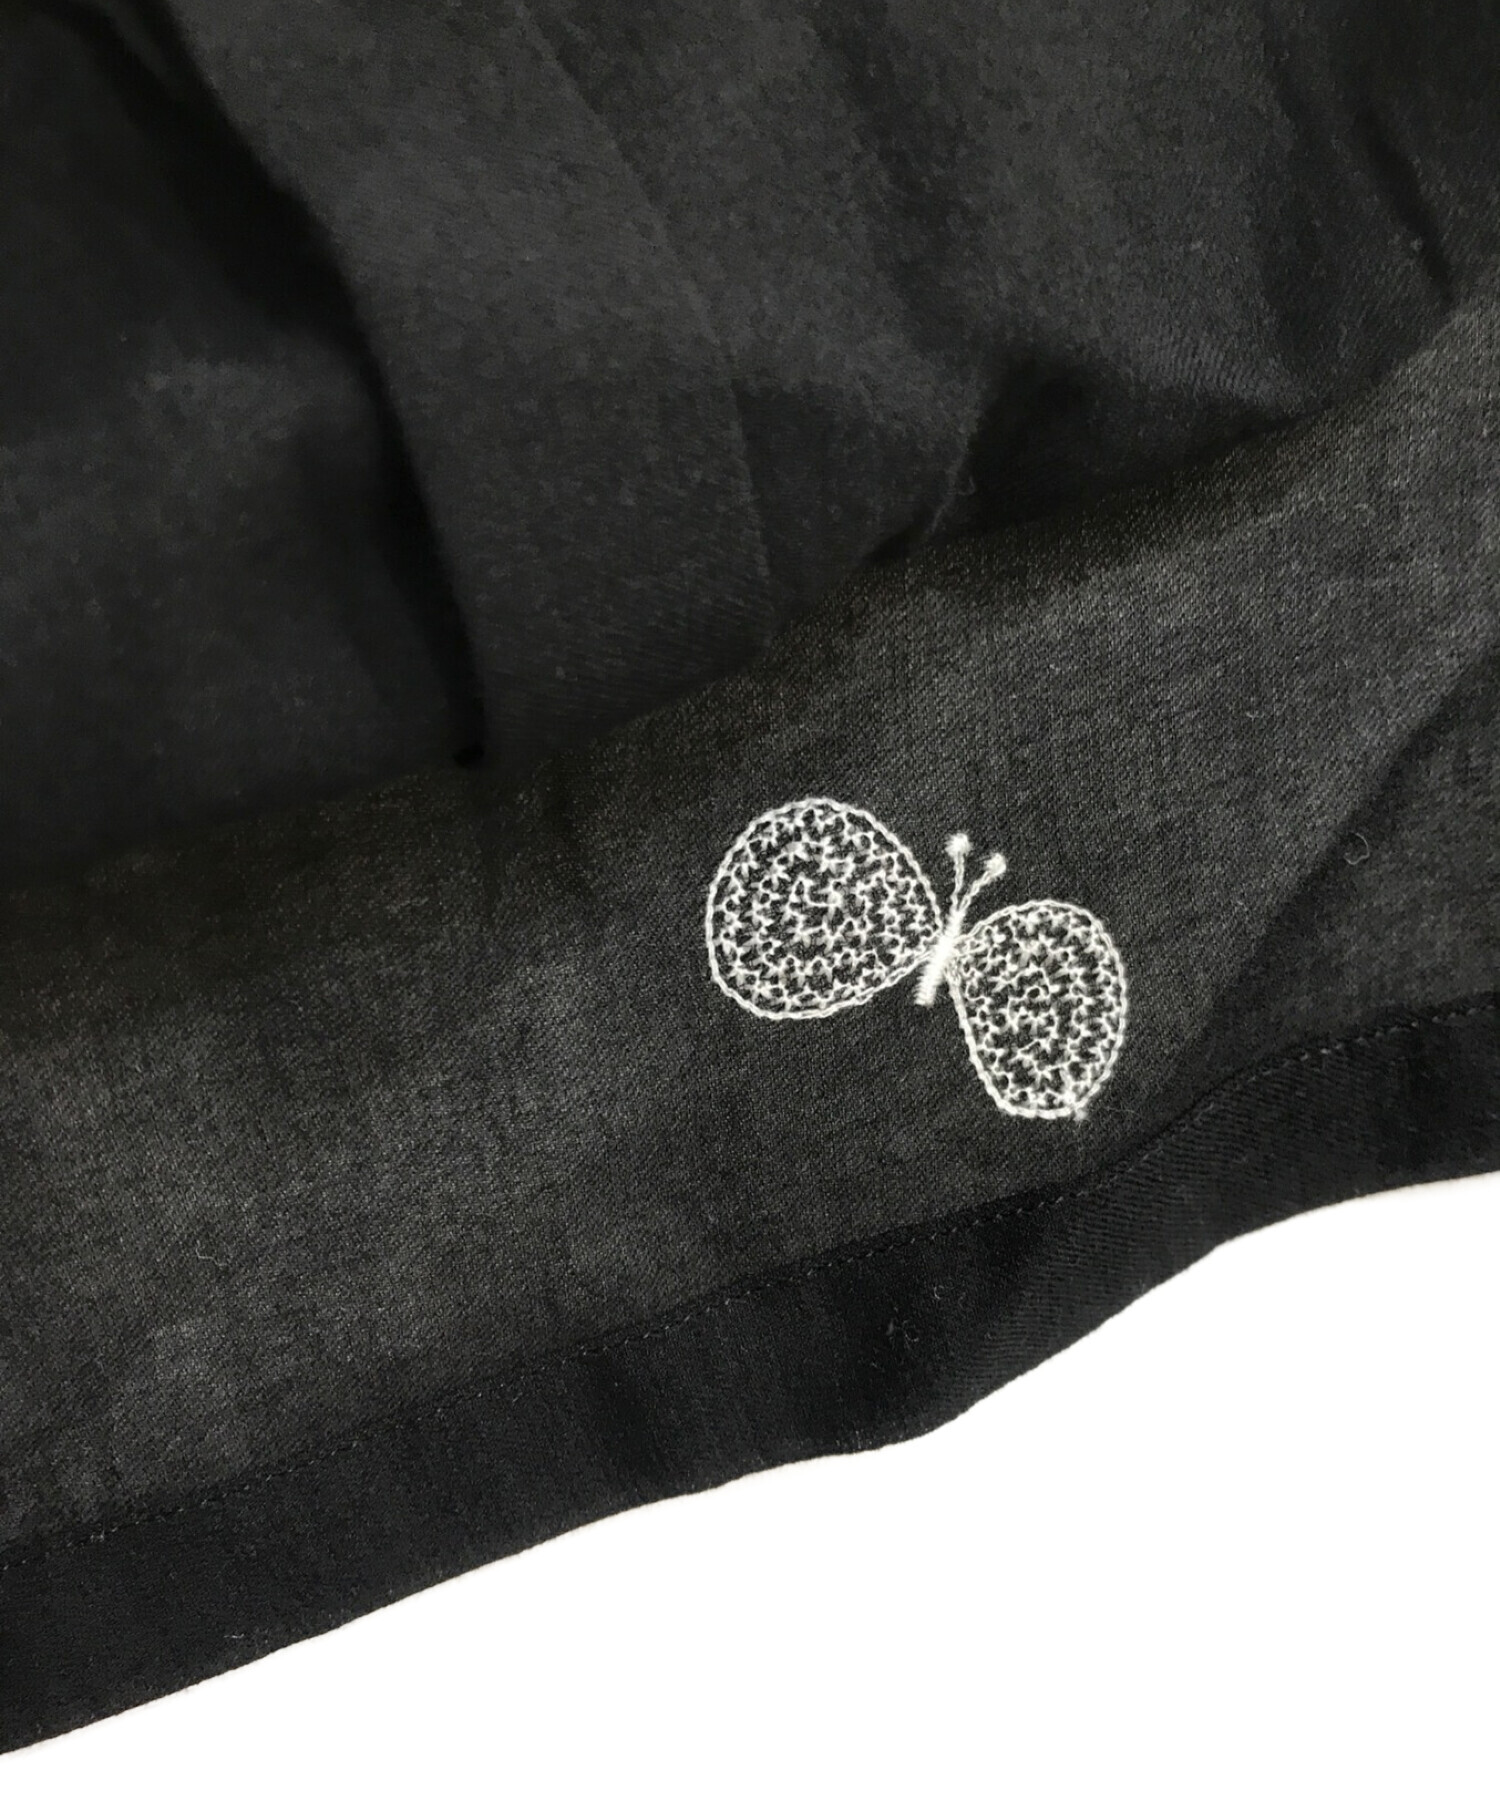 mina perhonen (ミナ ペルホネン) choucho/半袖シャツ　ws1898　刺繍 ブラック サイズ:38